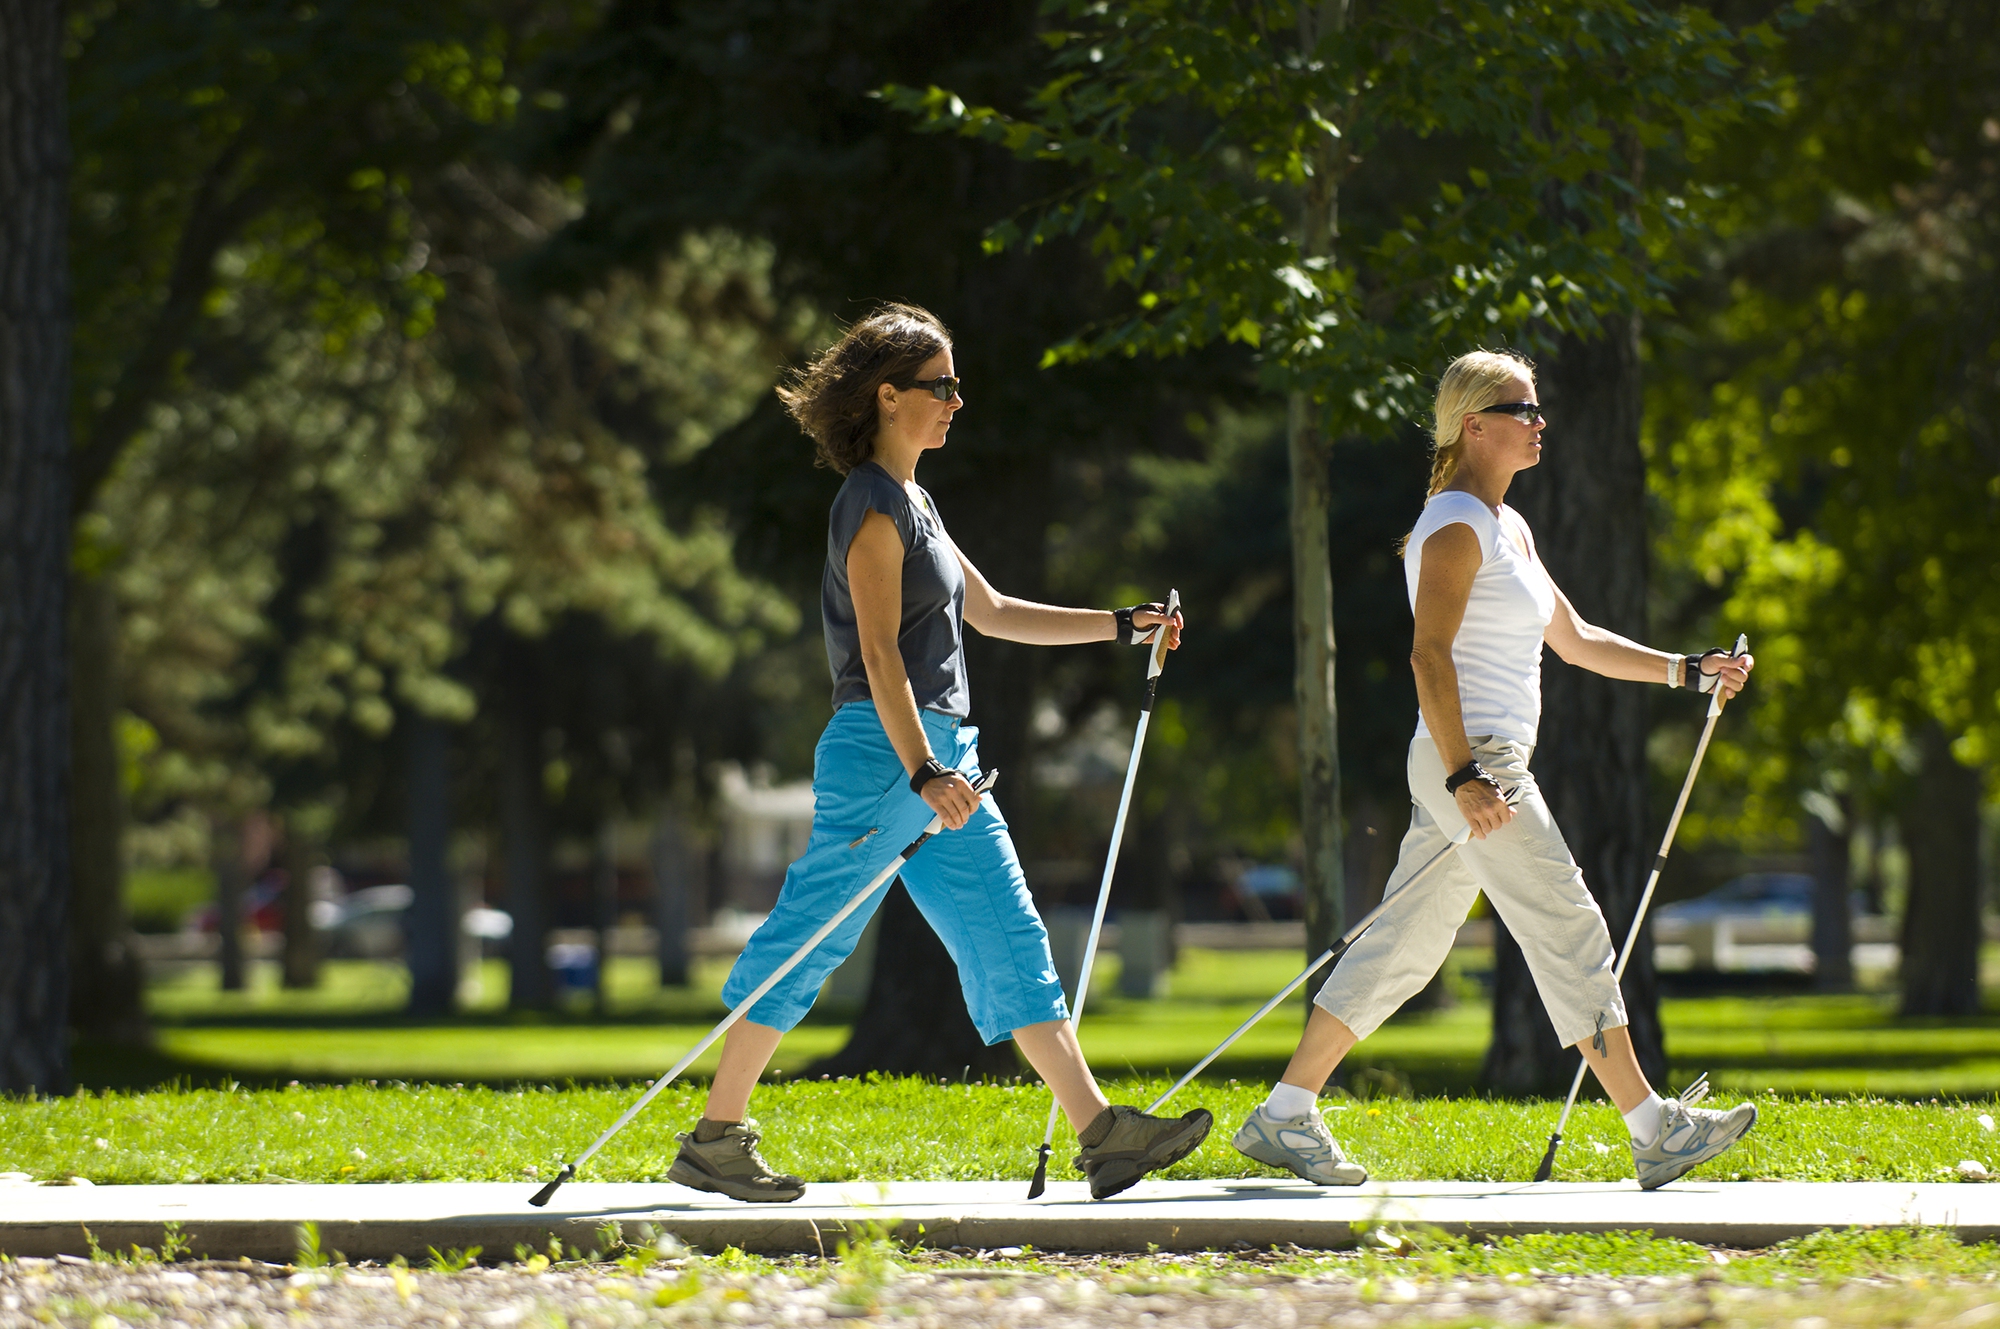 Nghiên cứu mới phát hiện kiểu đi bộ giúp làm chậm quá trình thoái hóa não bộ hiệu quả - Ảnh 3.